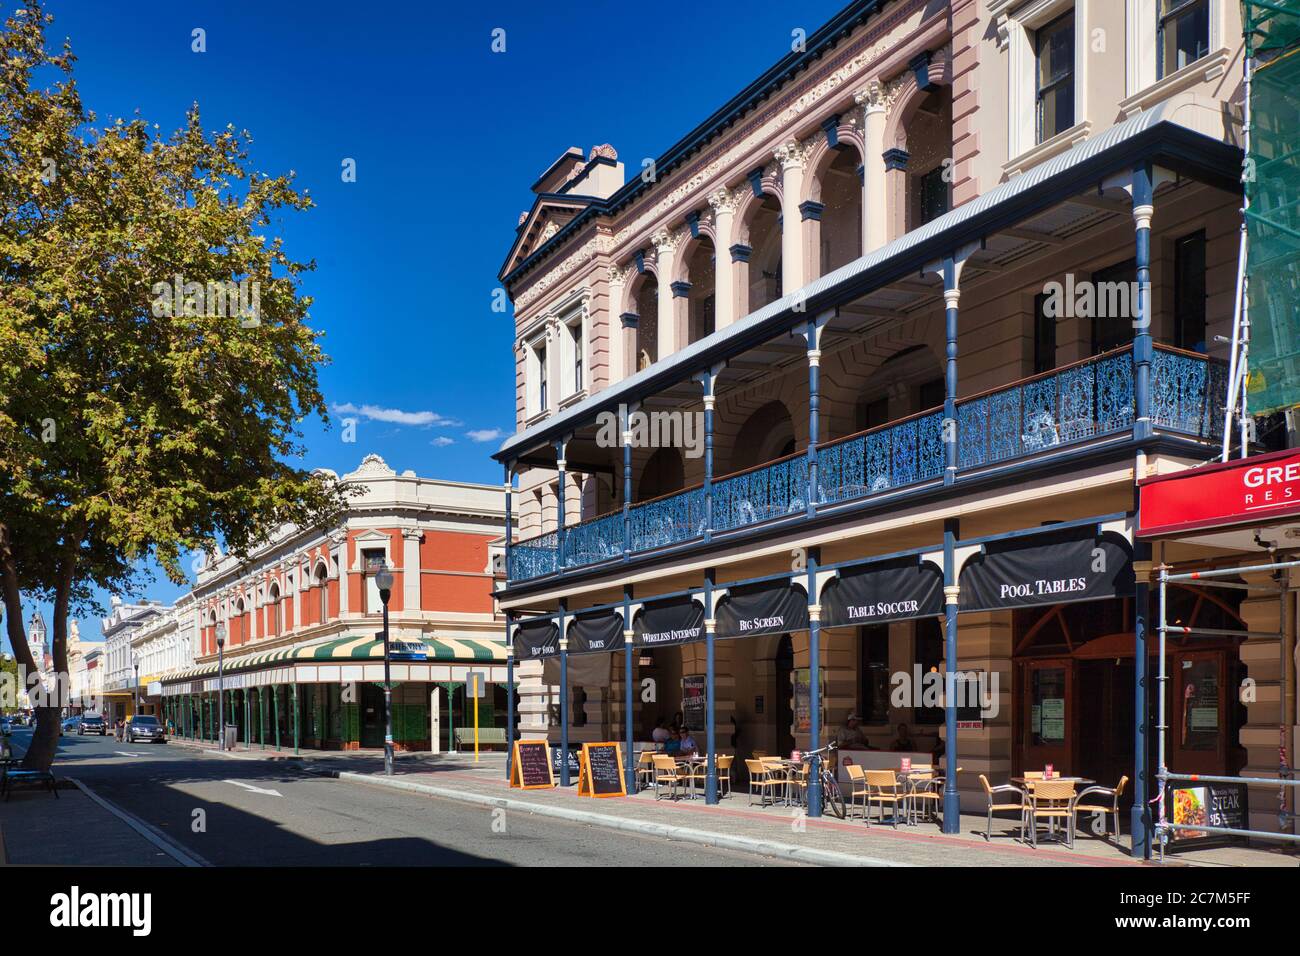 Typische Gebäude im älteren Stil mit Bögen und Veranden mit hübschen schmiedeeisernen Geländern an einer Straße in Fremantle, Westaustralien. Stockfoto